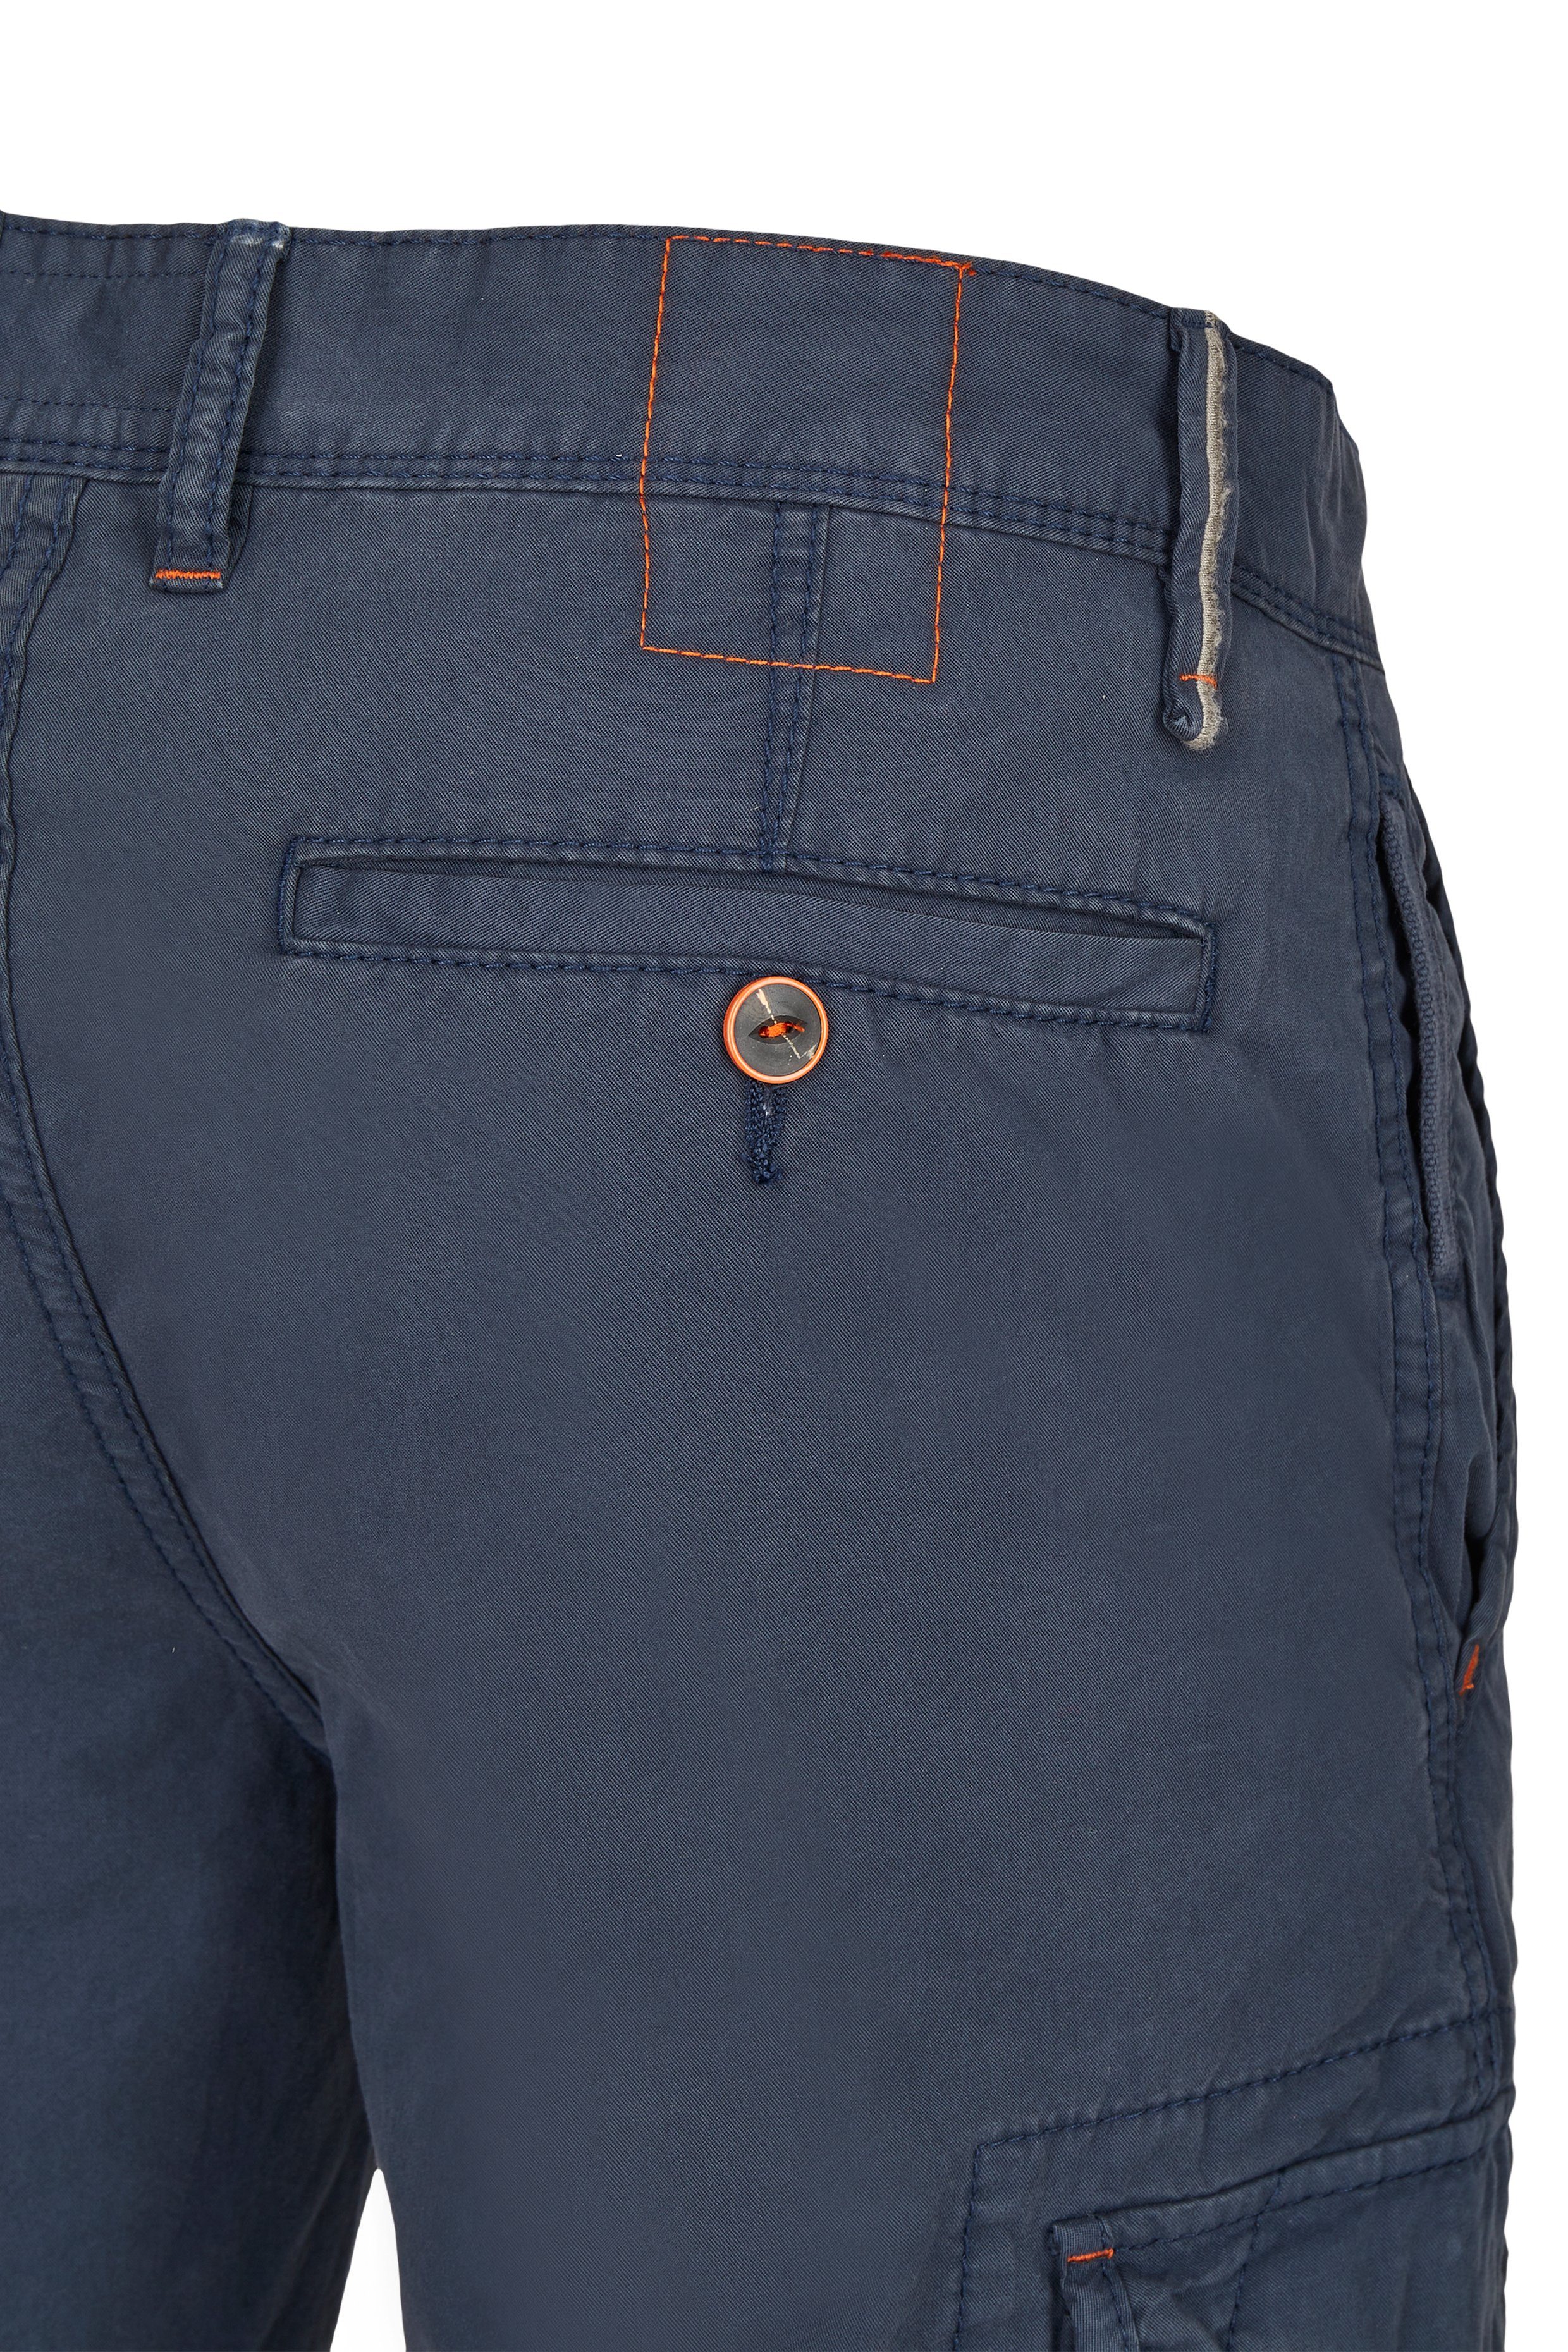 Hattric CARGO navy 5Q89.43 BERMUDA 696530 5-Pocket-Jeans HATTRIC